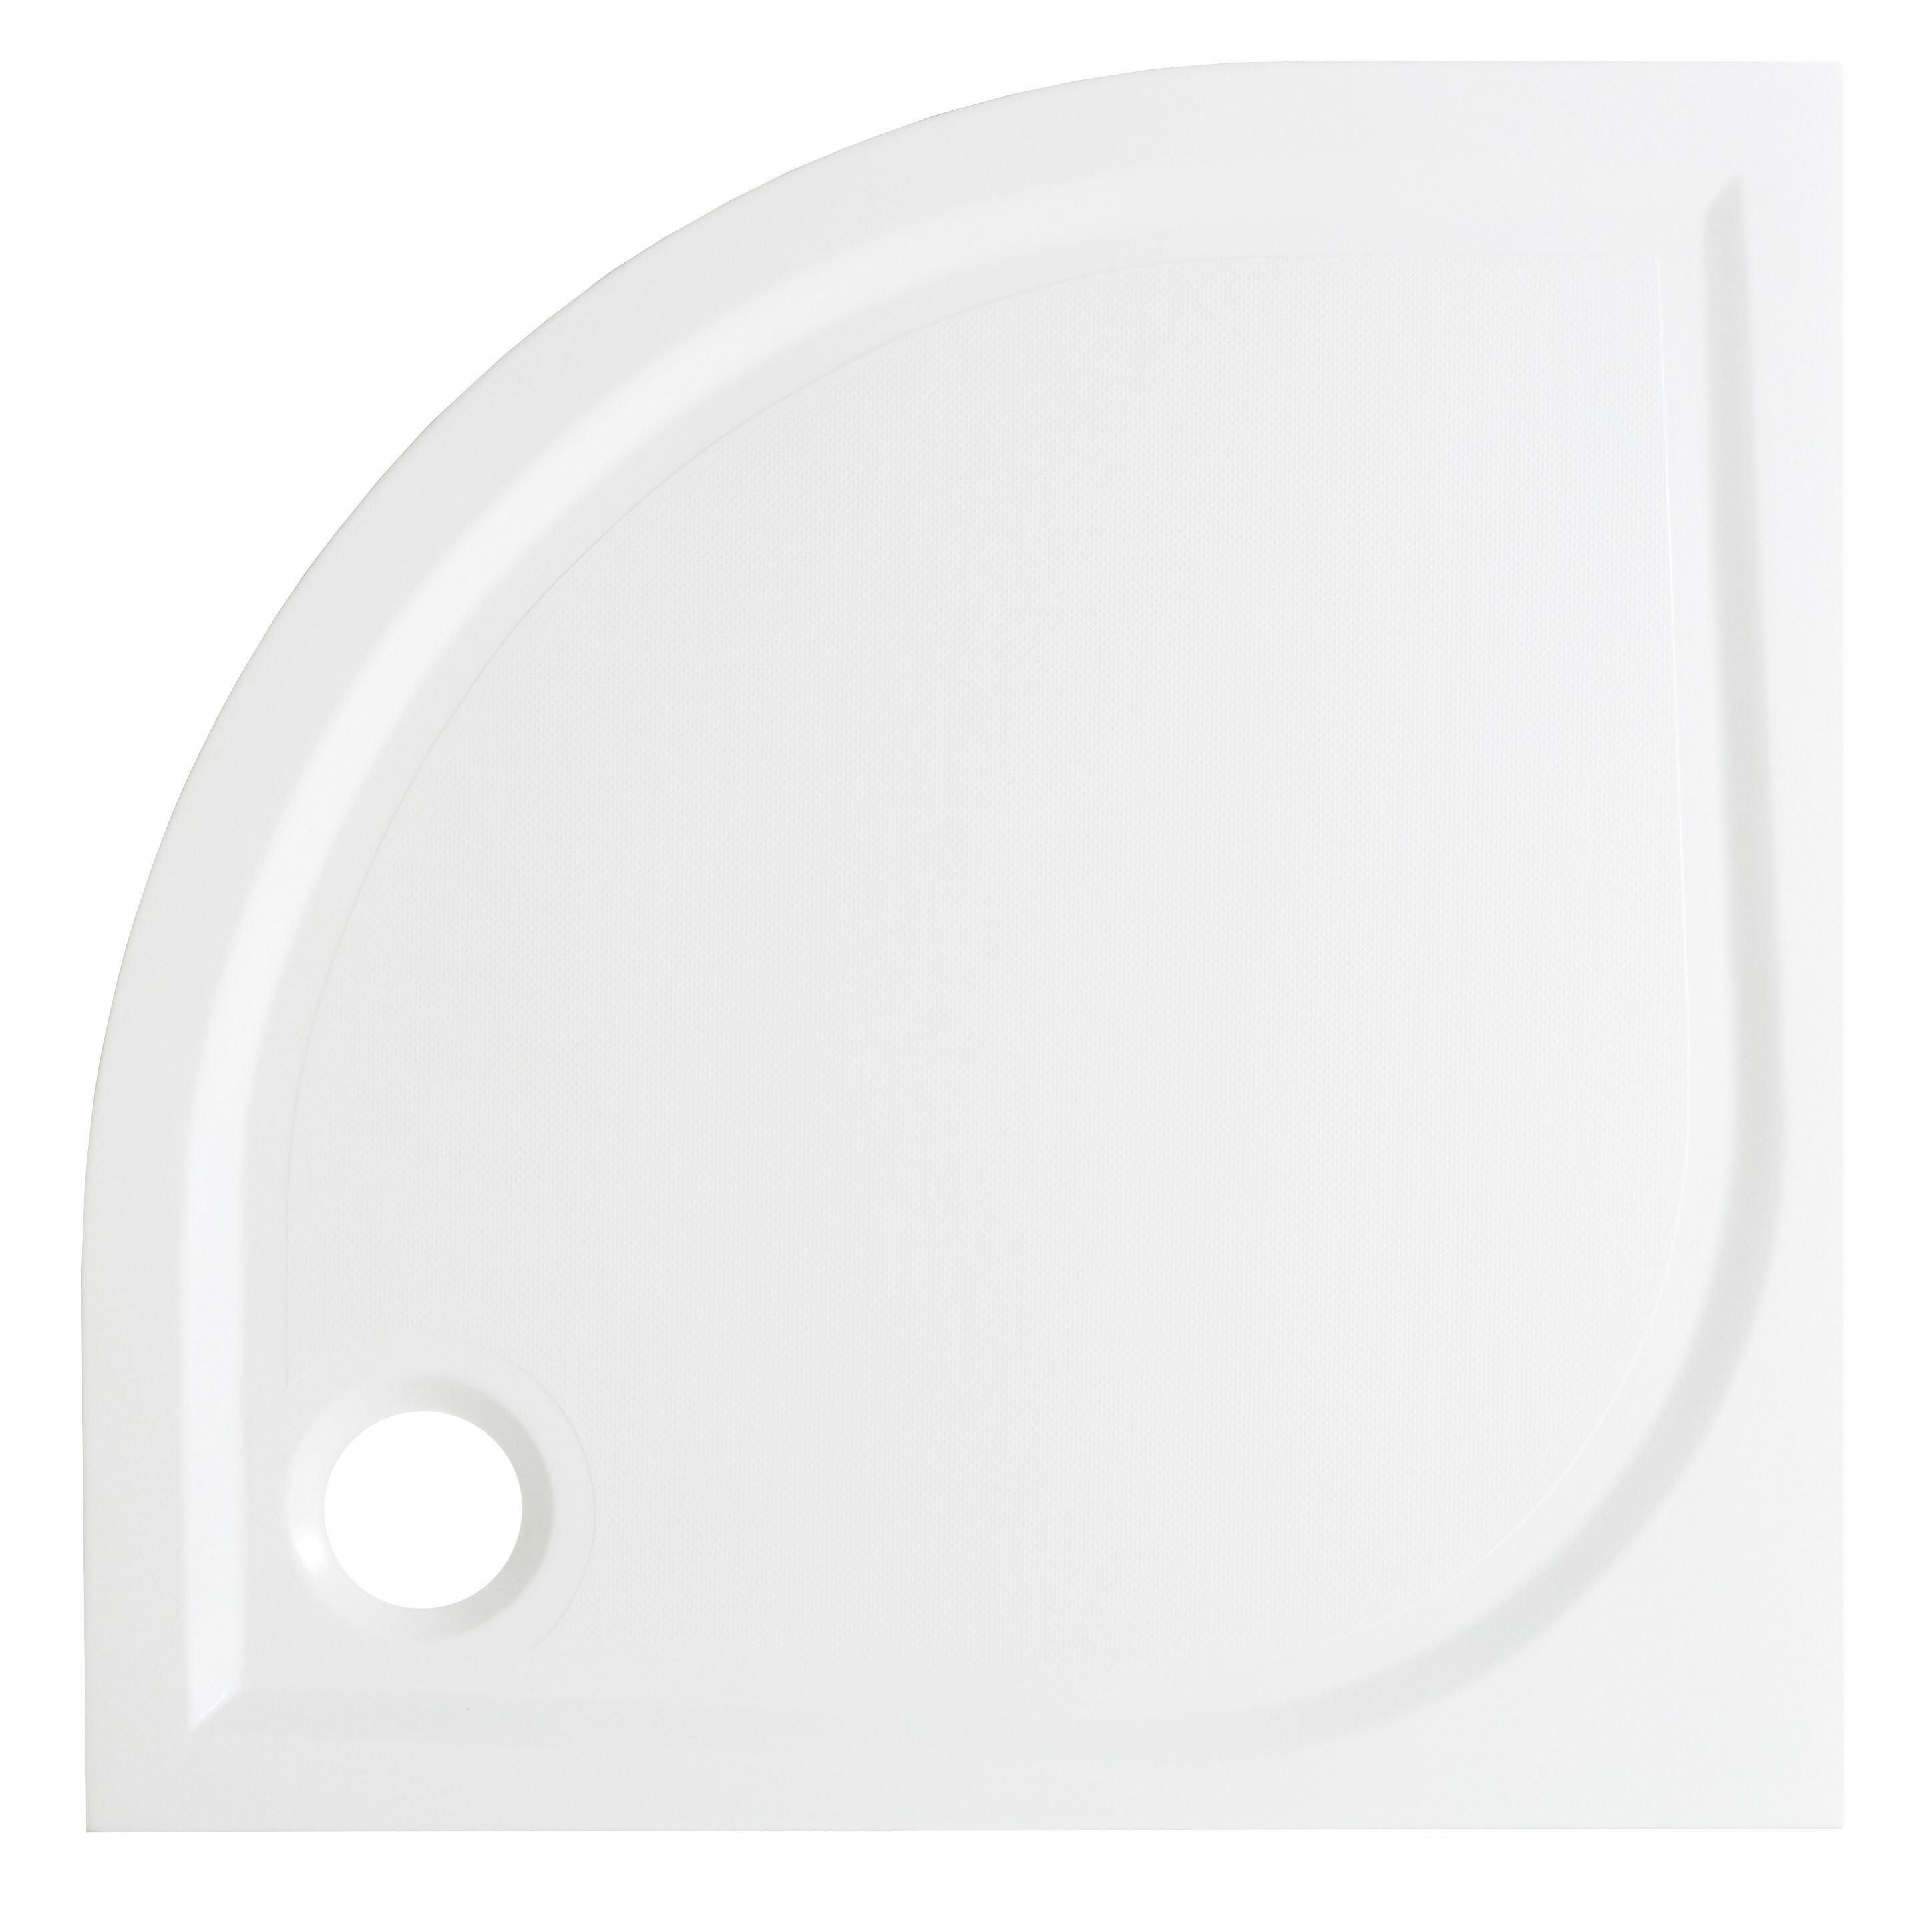 GoodHome Limski White Quadrant Shower tray (L)900mm (W)900mm (H) 28mm